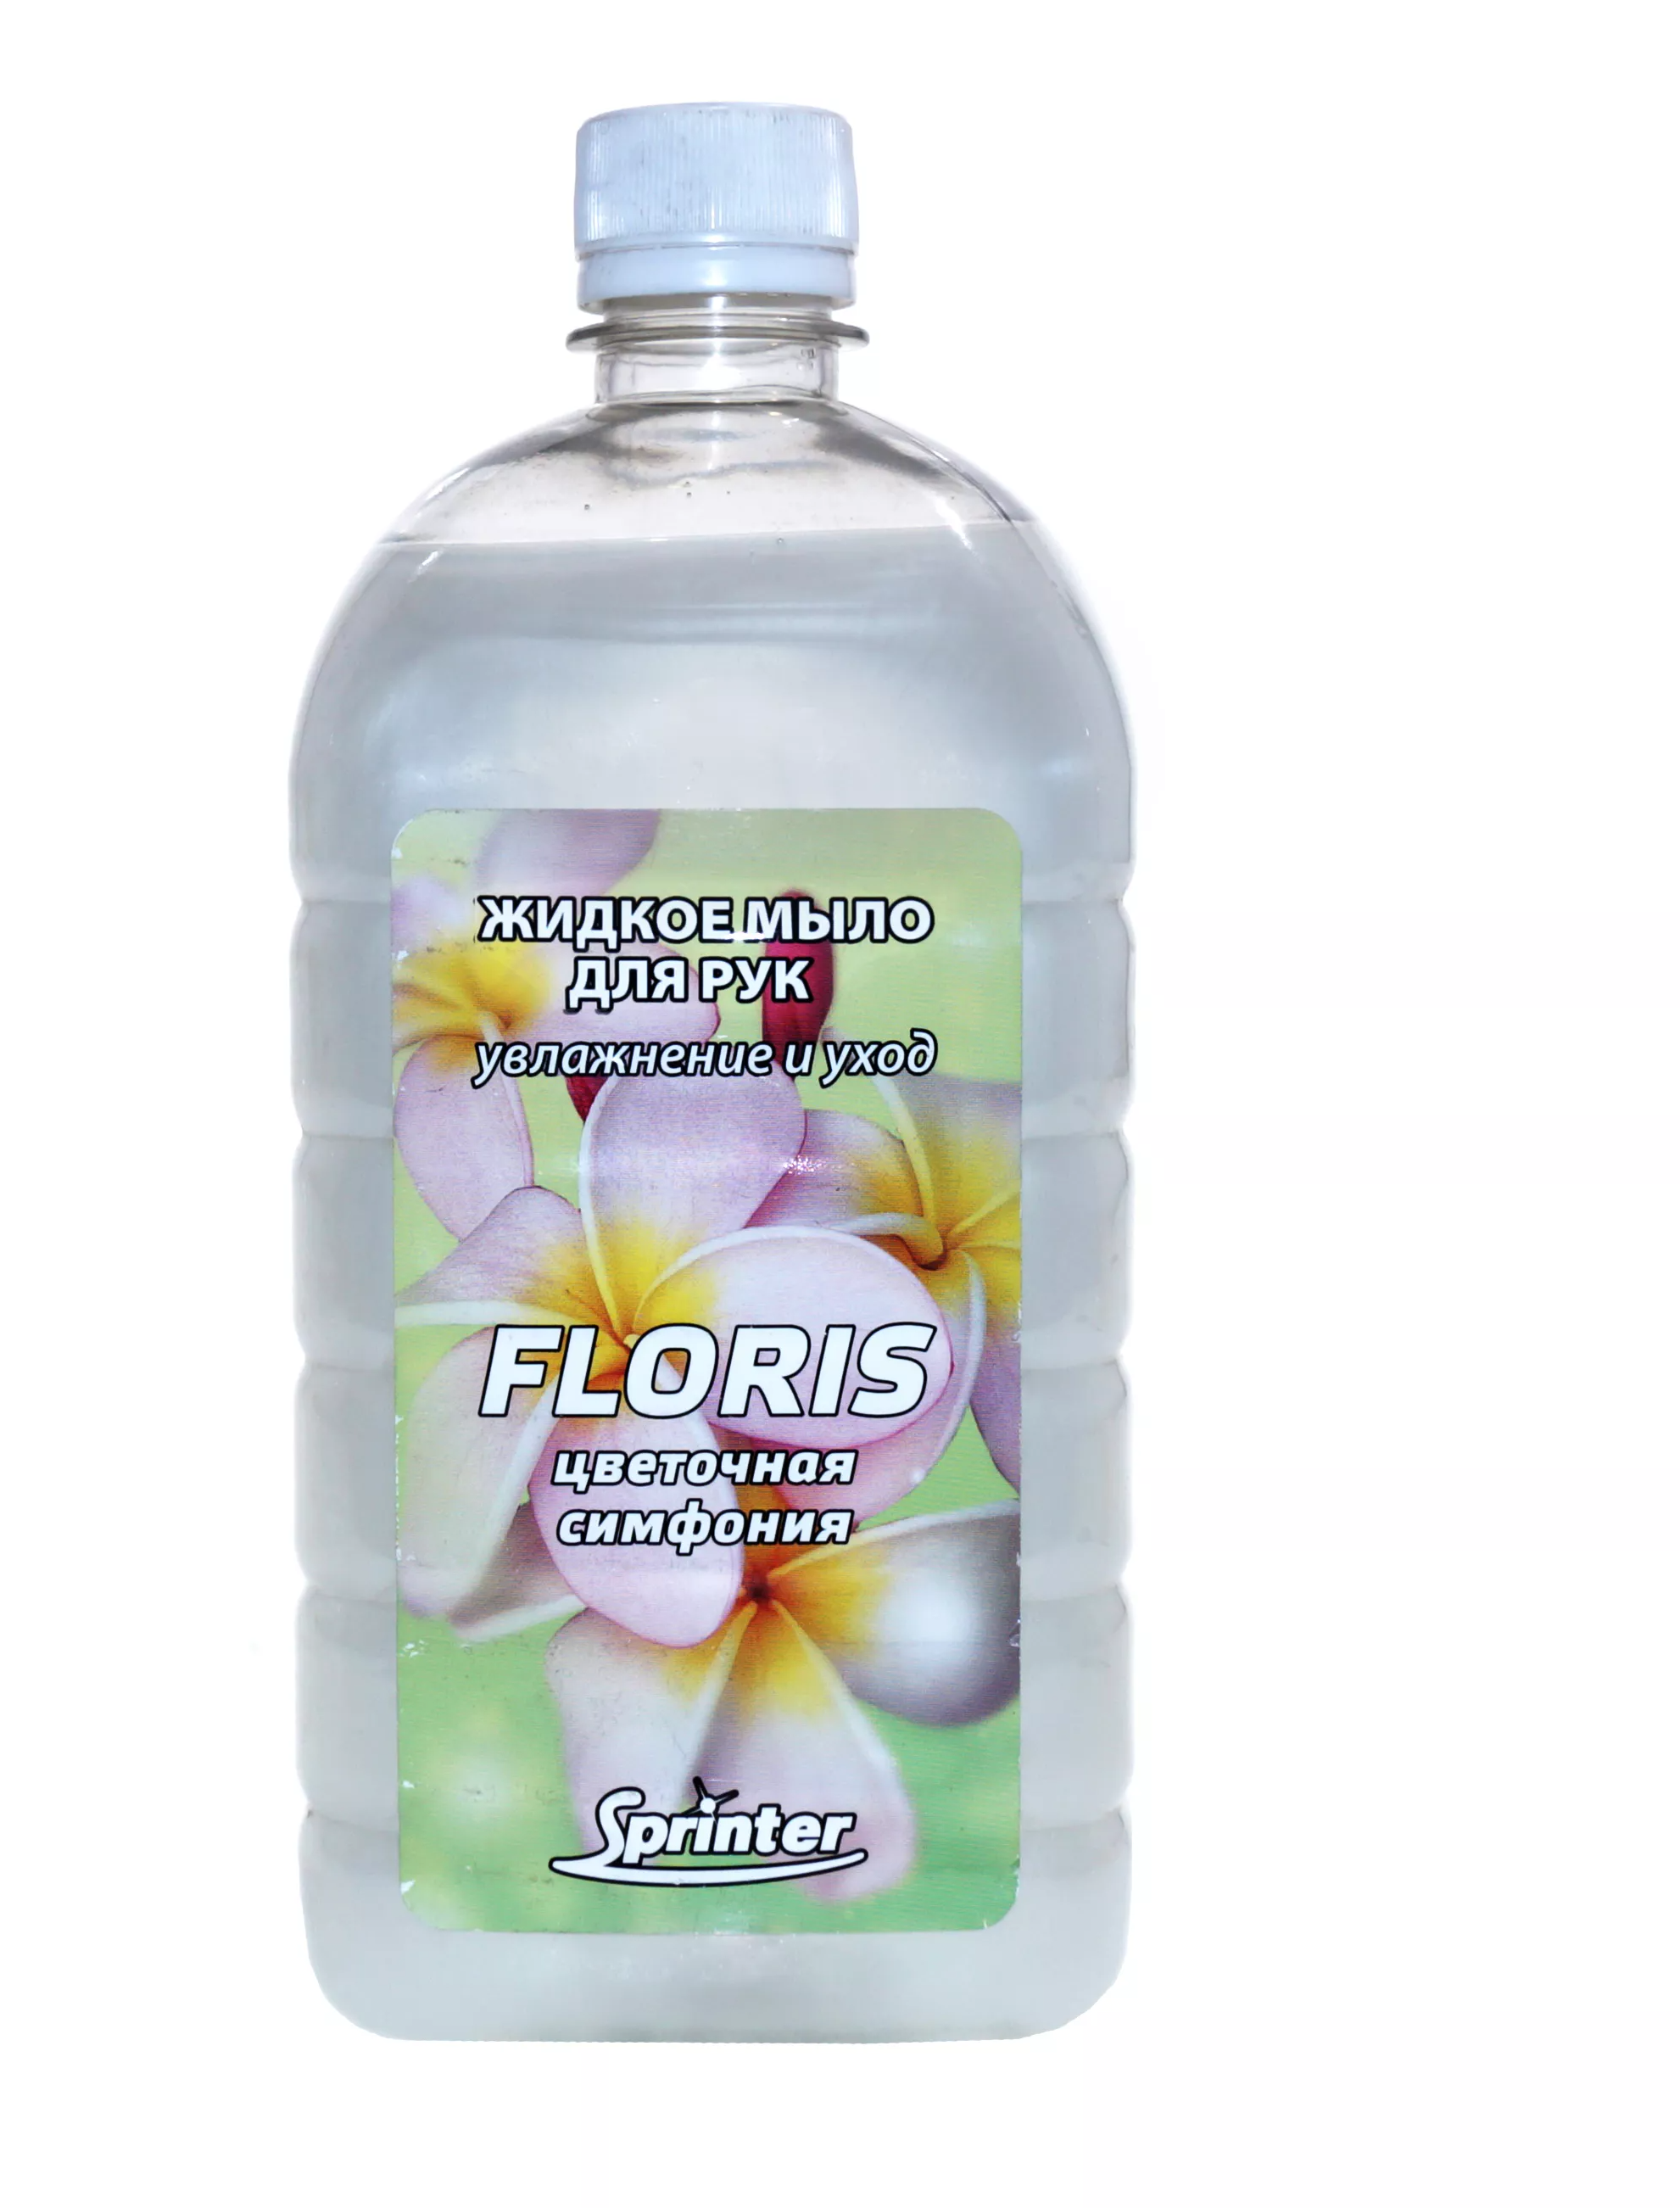 Мыло жидкое Спринтер FLORIS, объем 1,0л, с антибактериальным эффектом, крышка